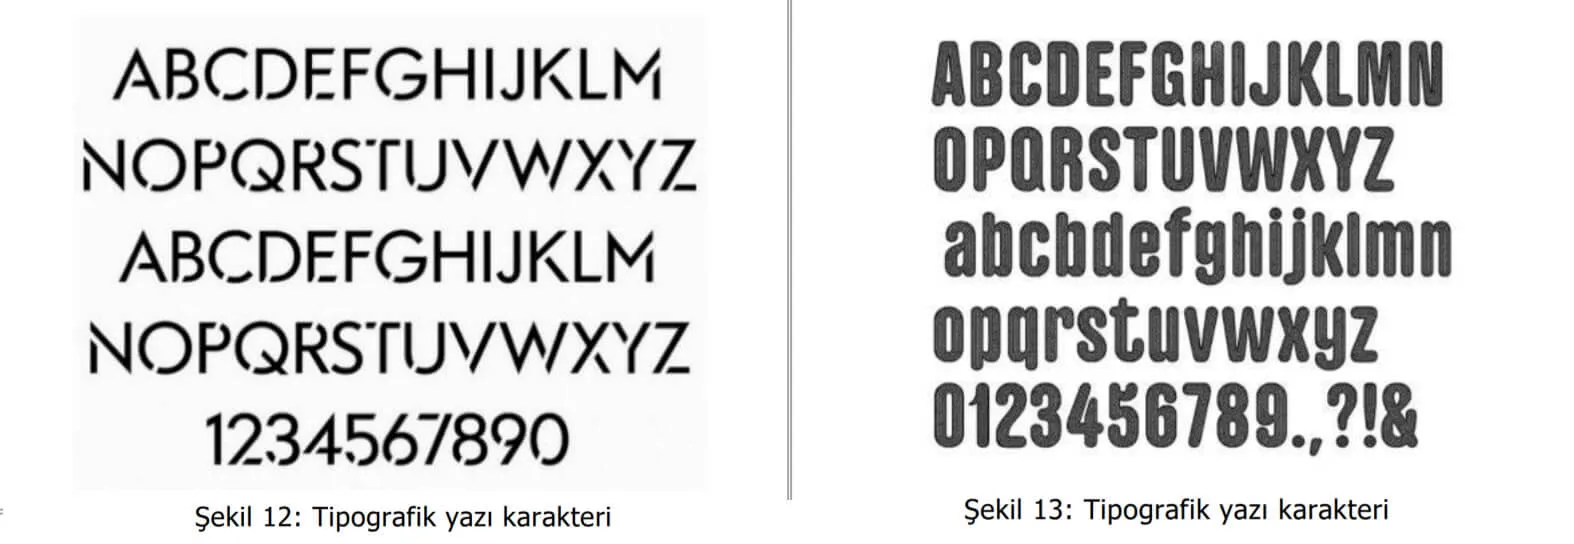 tipografik yazı karakter örnekleri-çubuk patent